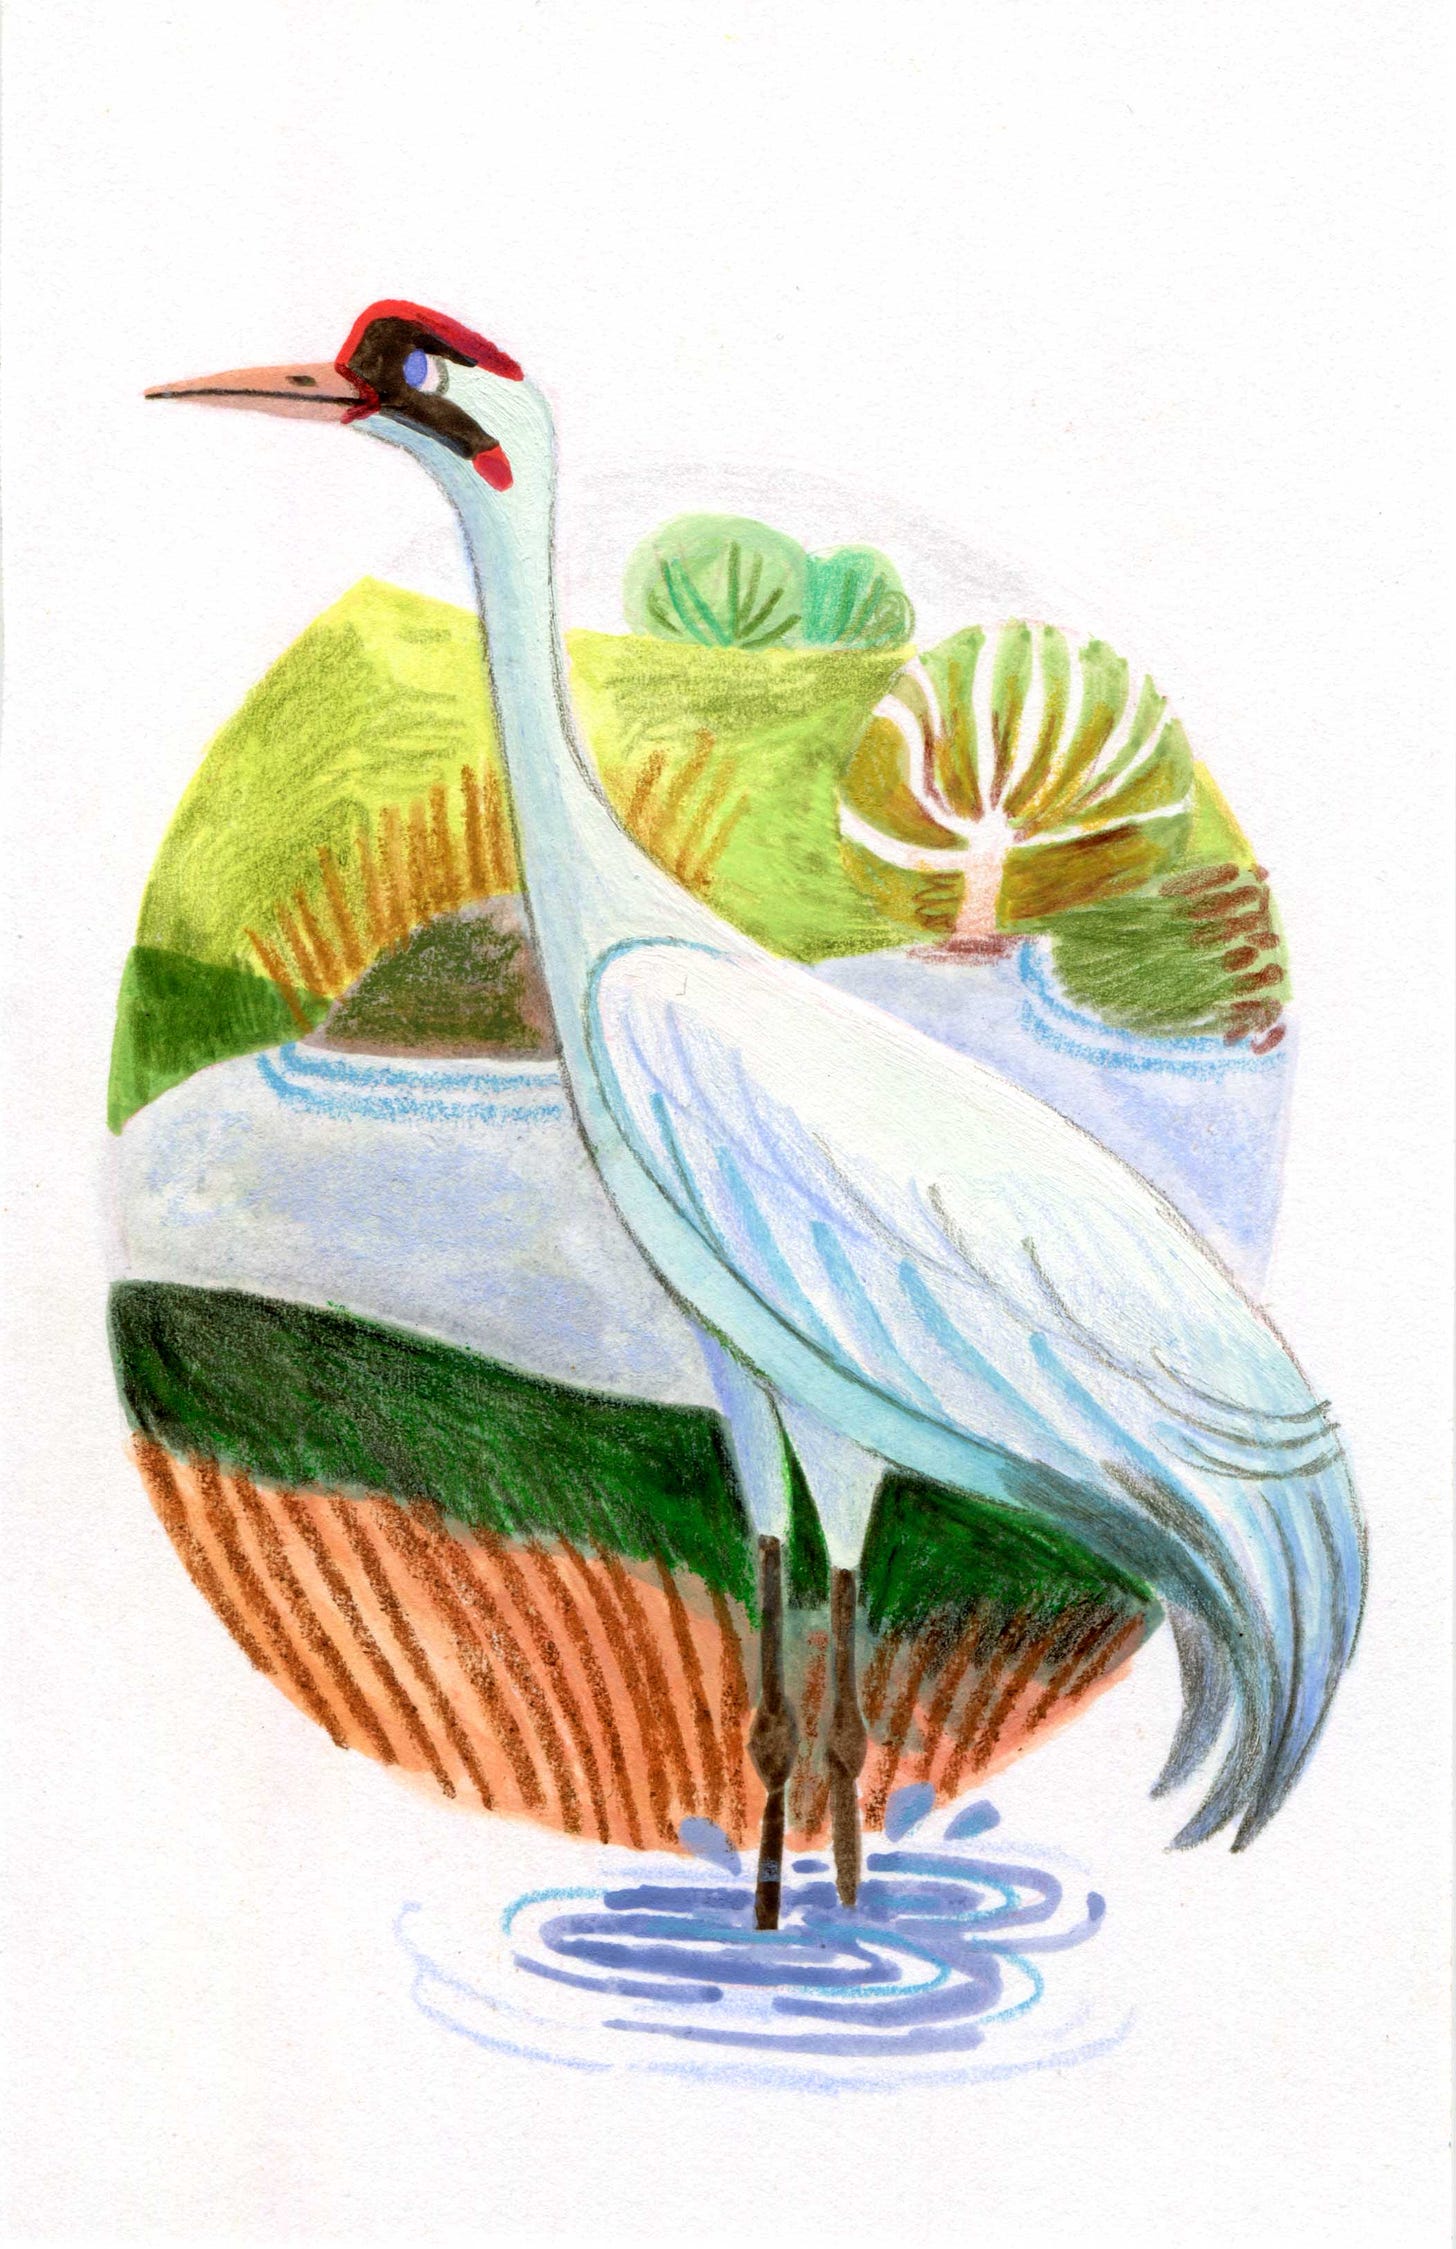 Kayla Stark bird illustration in the style of Felicita Sala